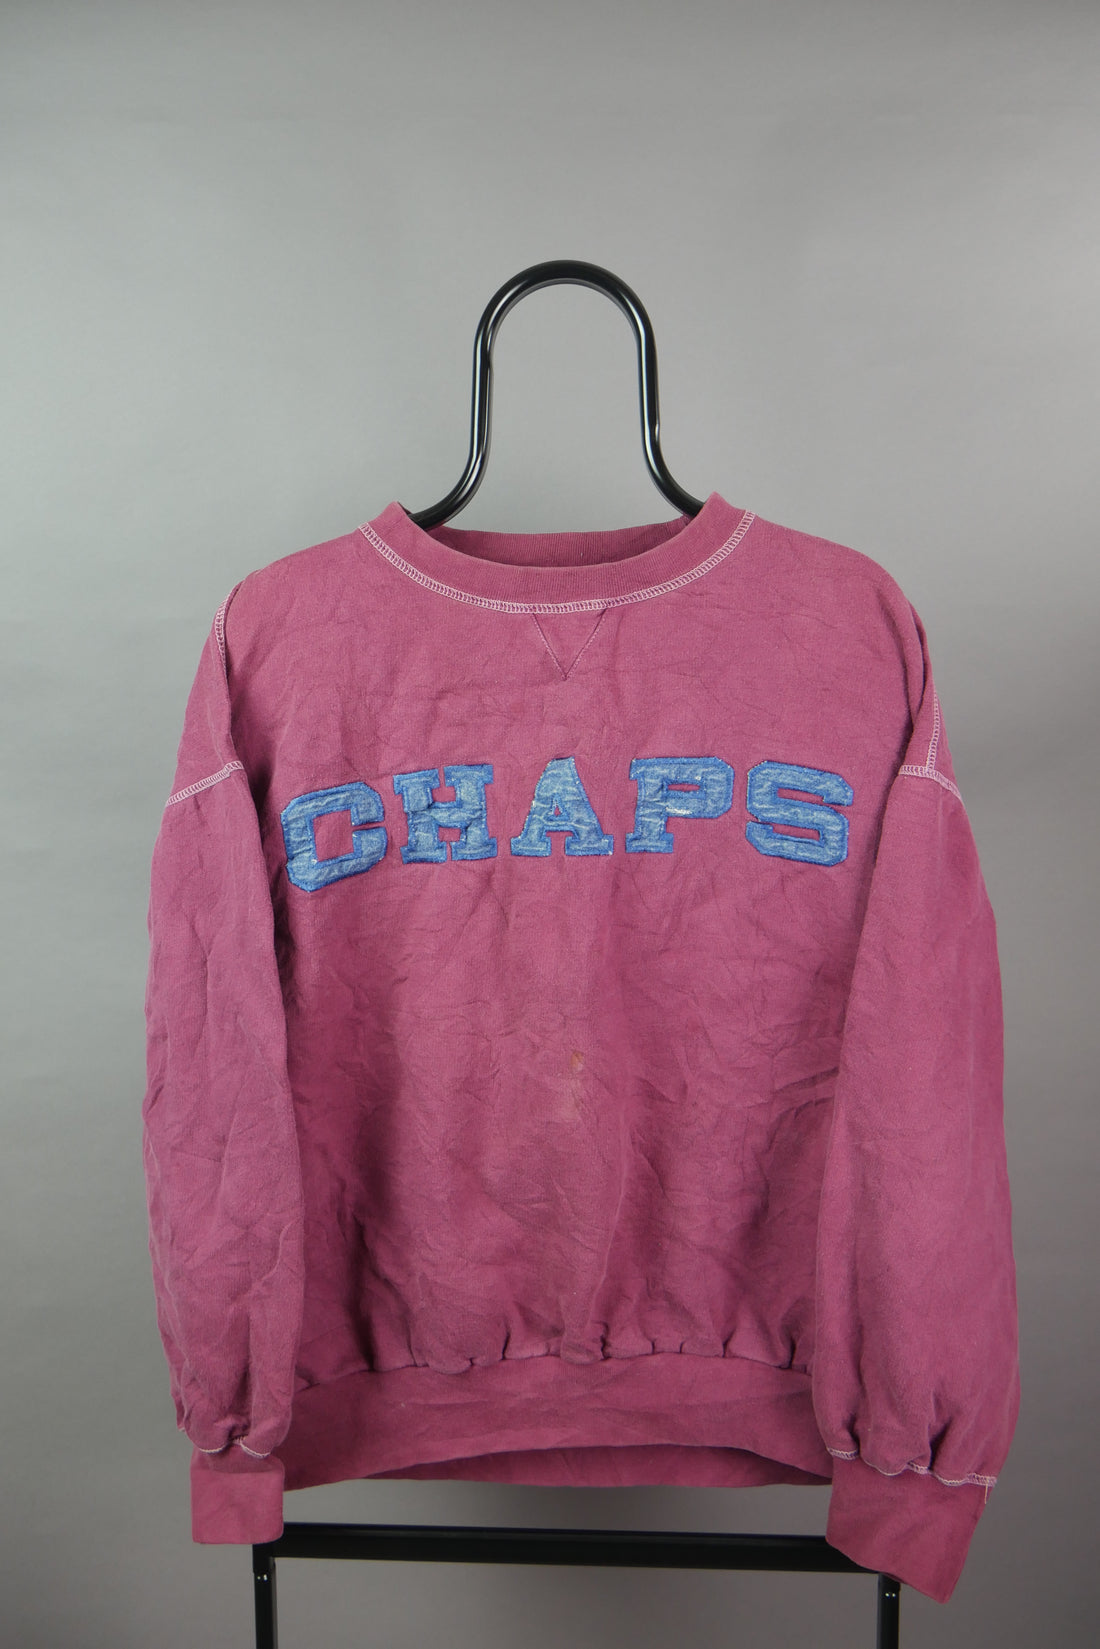 The Vintage Ralph Lauren Denim Chaps Spellout Sweatshirt (Womens S)